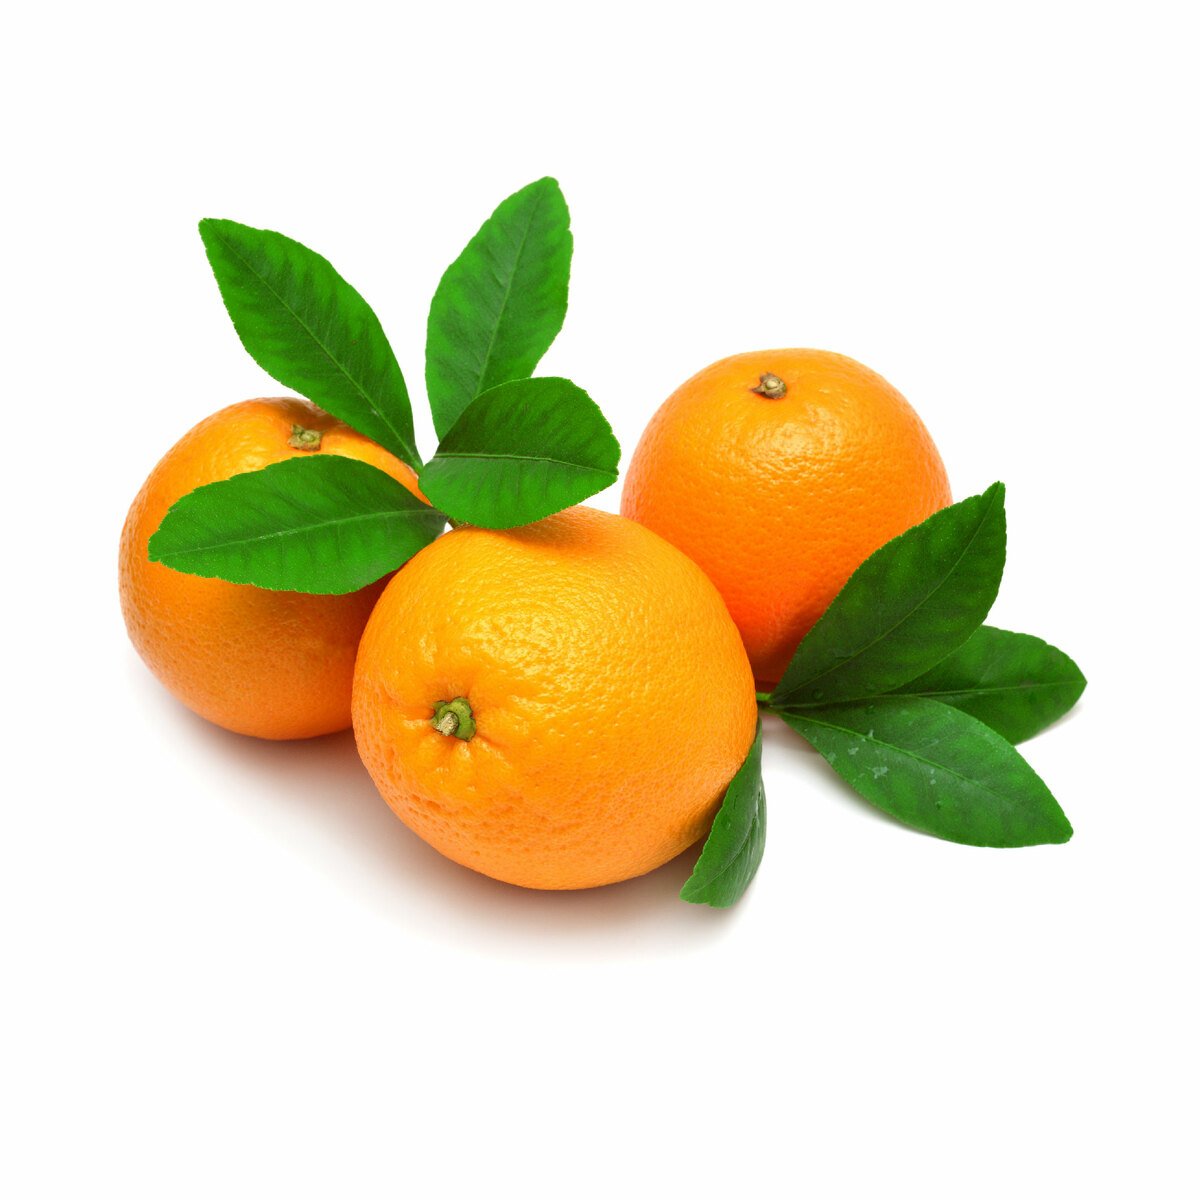 اشتري قم بشراء برتقال نافل 1 كجم وزن تقريبي Online at Best Price من الموقع - من لولو هايبر ماركت Citrus Fruits في الامارات